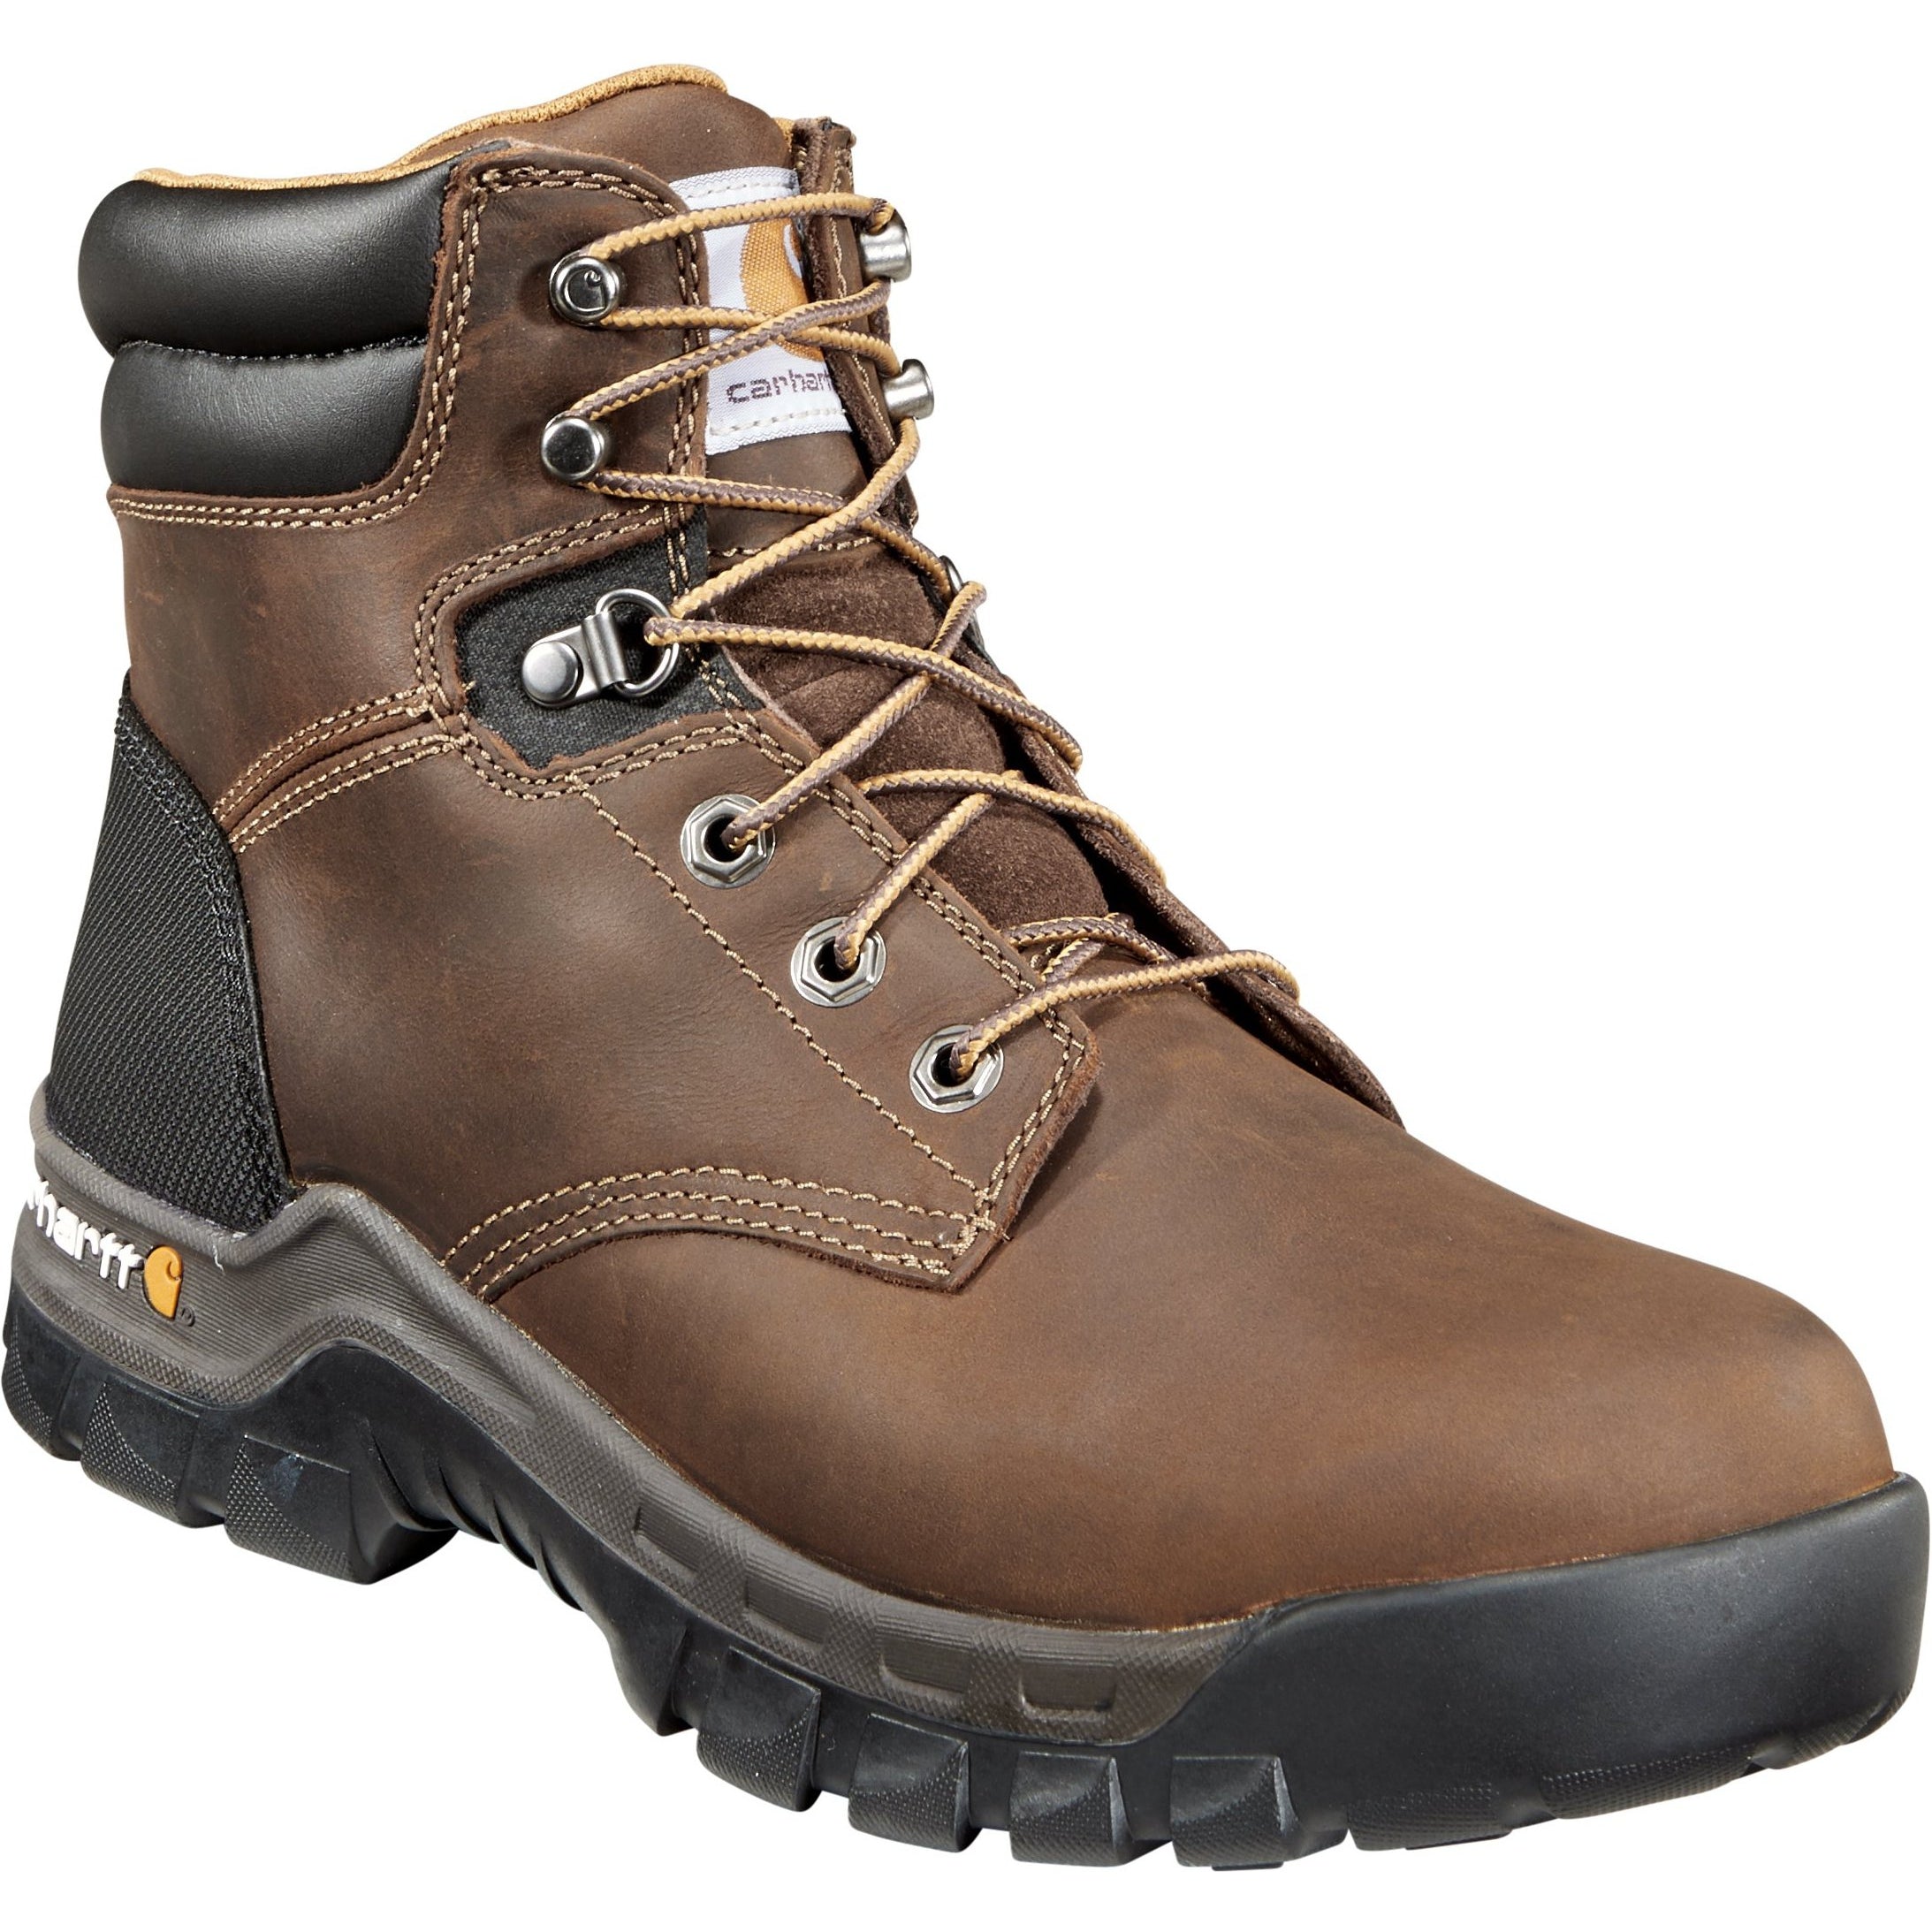 Carhartt Men's Rugged Flex 6" Soft Toe Work Boot - Brown - CMF6066 8 / Medium / Brown - Overlook Boots